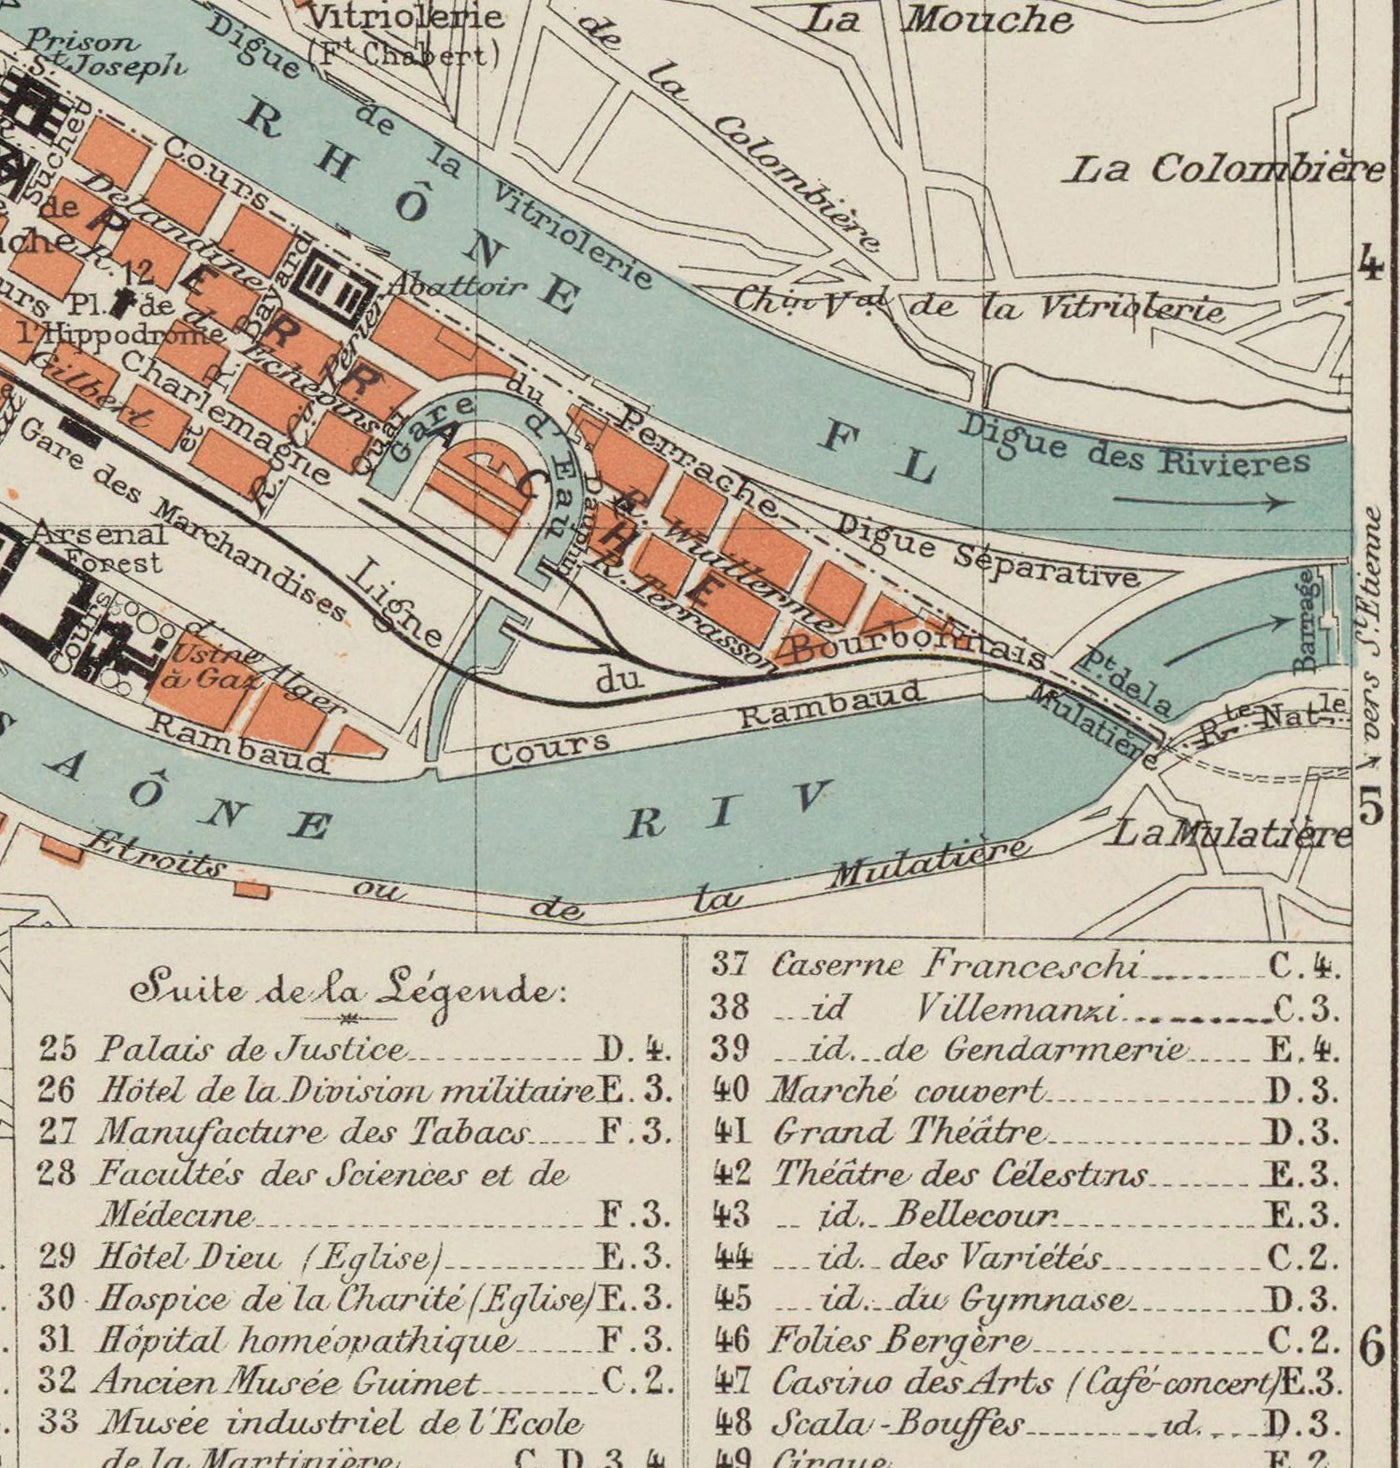 Alte Karte von Lyon, Frankreich im Jahr 1888 von Louis-Francois - La Basilique Notre Dame, Fluss Rhone, Saone, Parc de la Tete d'Or, Place des Terreaux